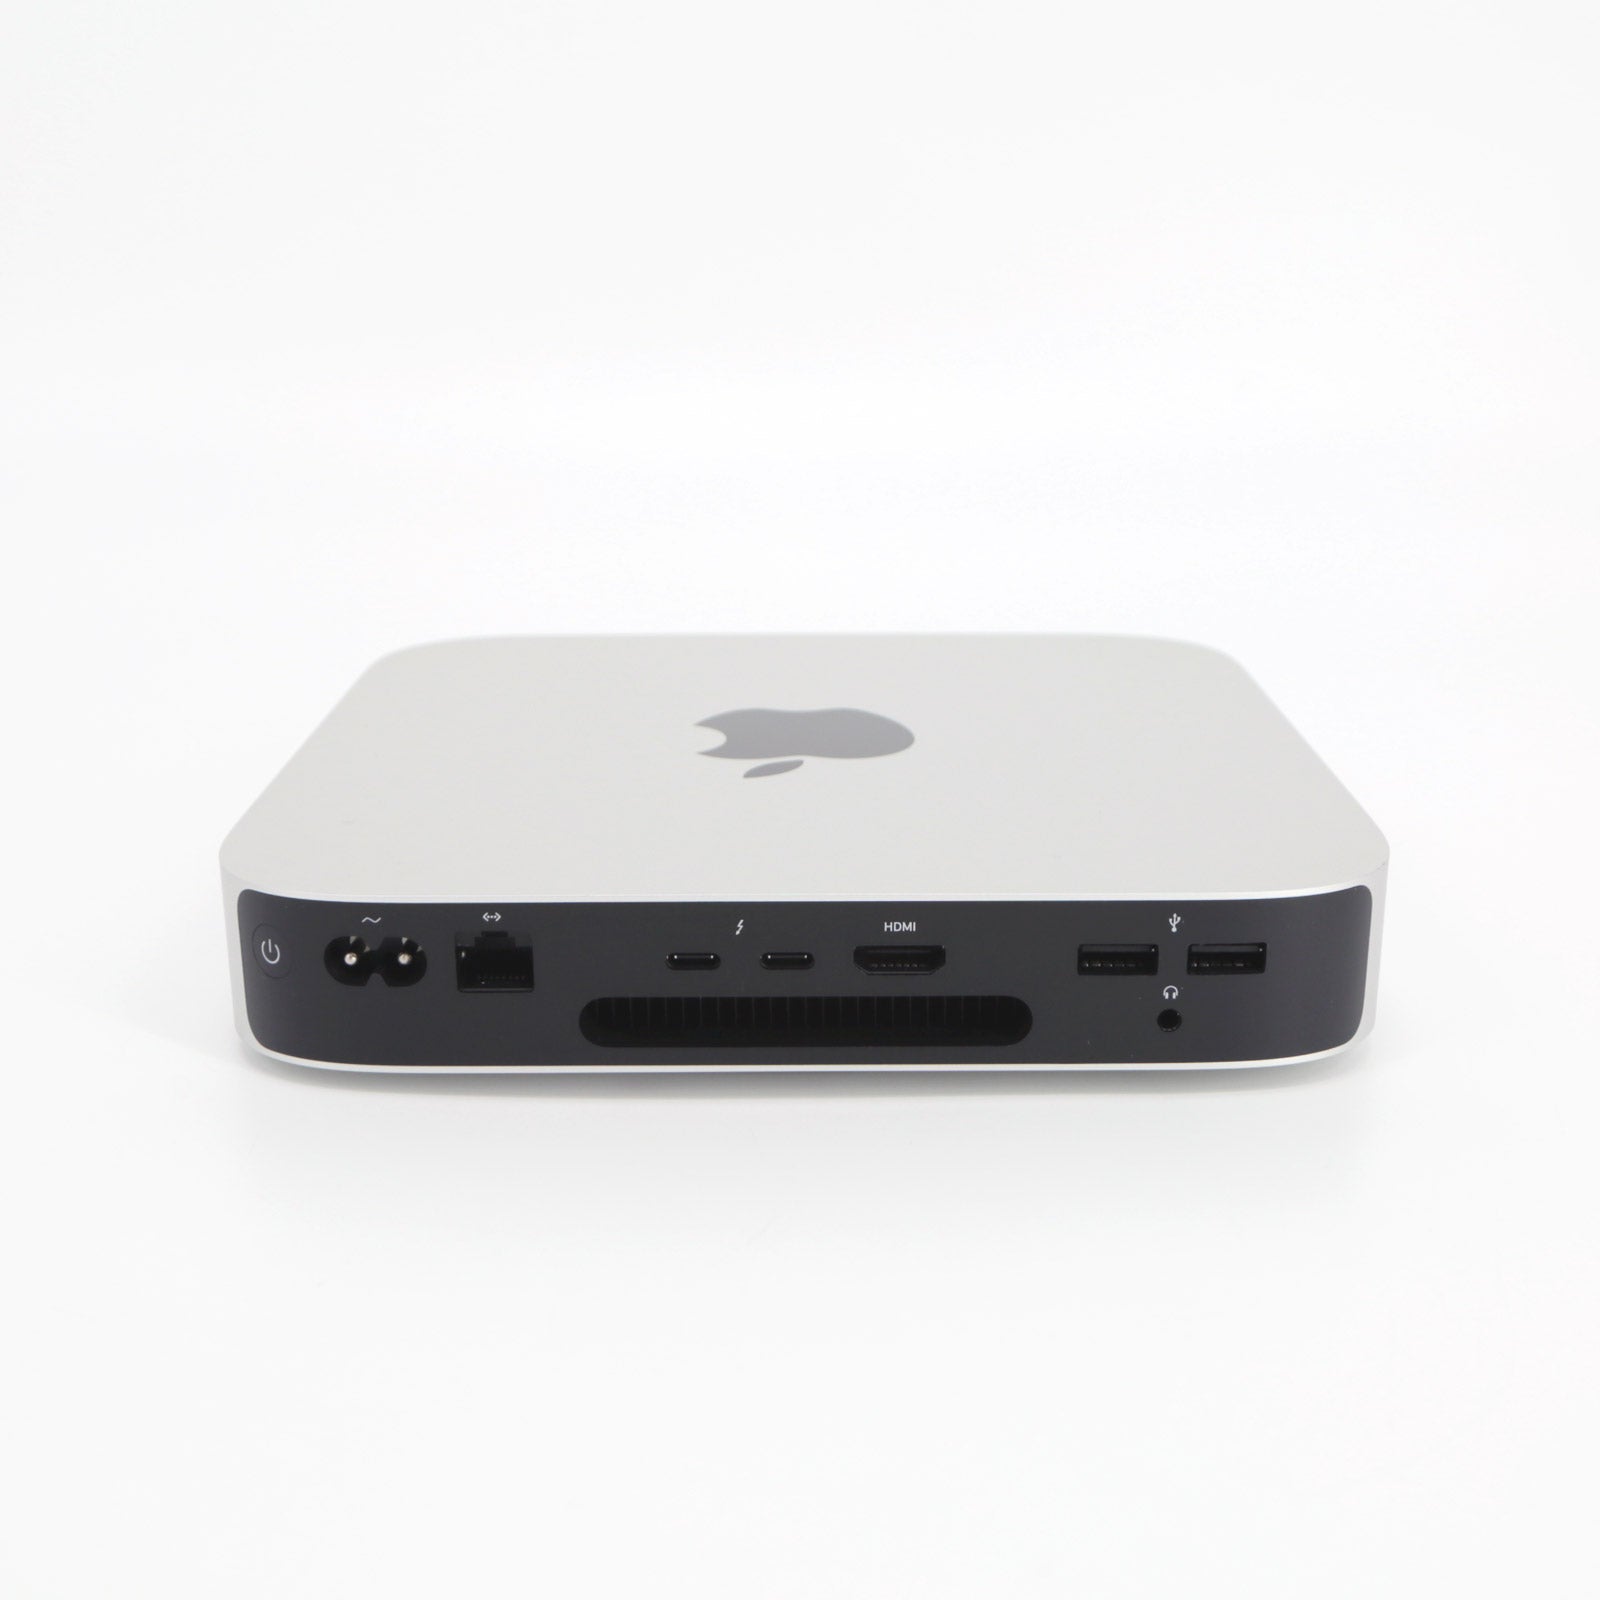 Apple Mac Mini 2020, Apple M1 Chip, 256GB SSD, 8GB RAM, Silver